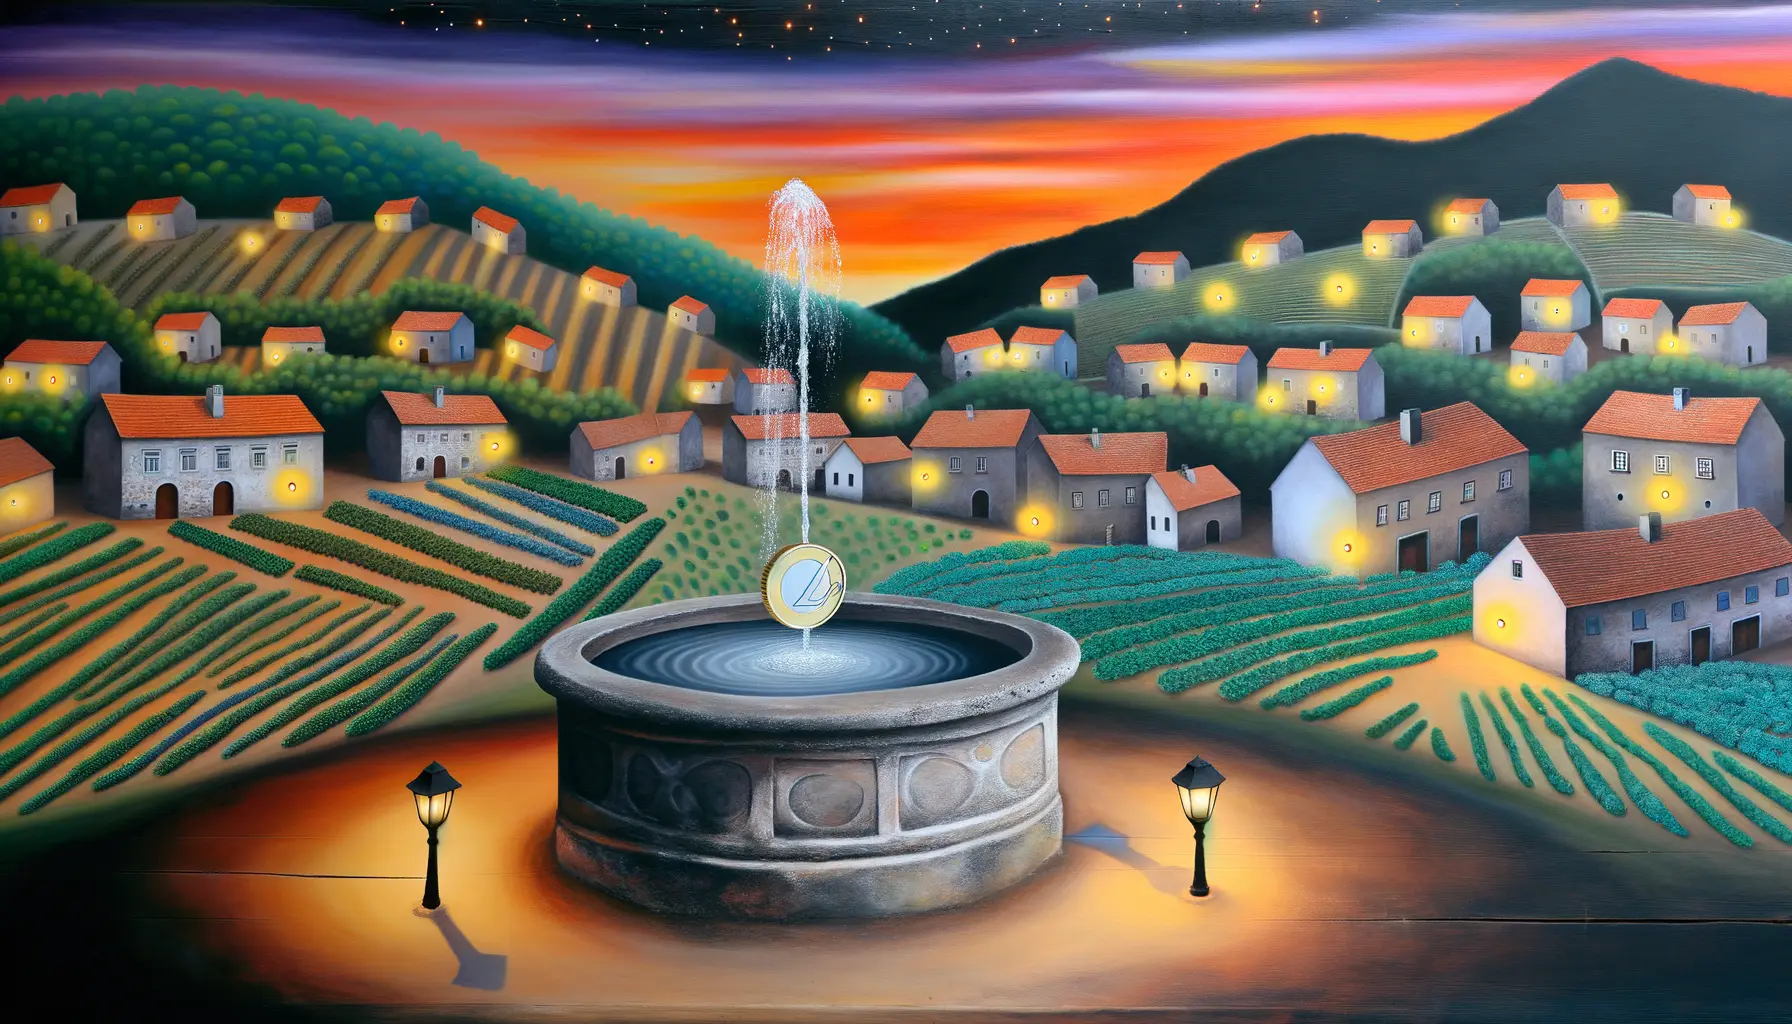 Malerische Darstellung eines europäischen Dorfes am Abend